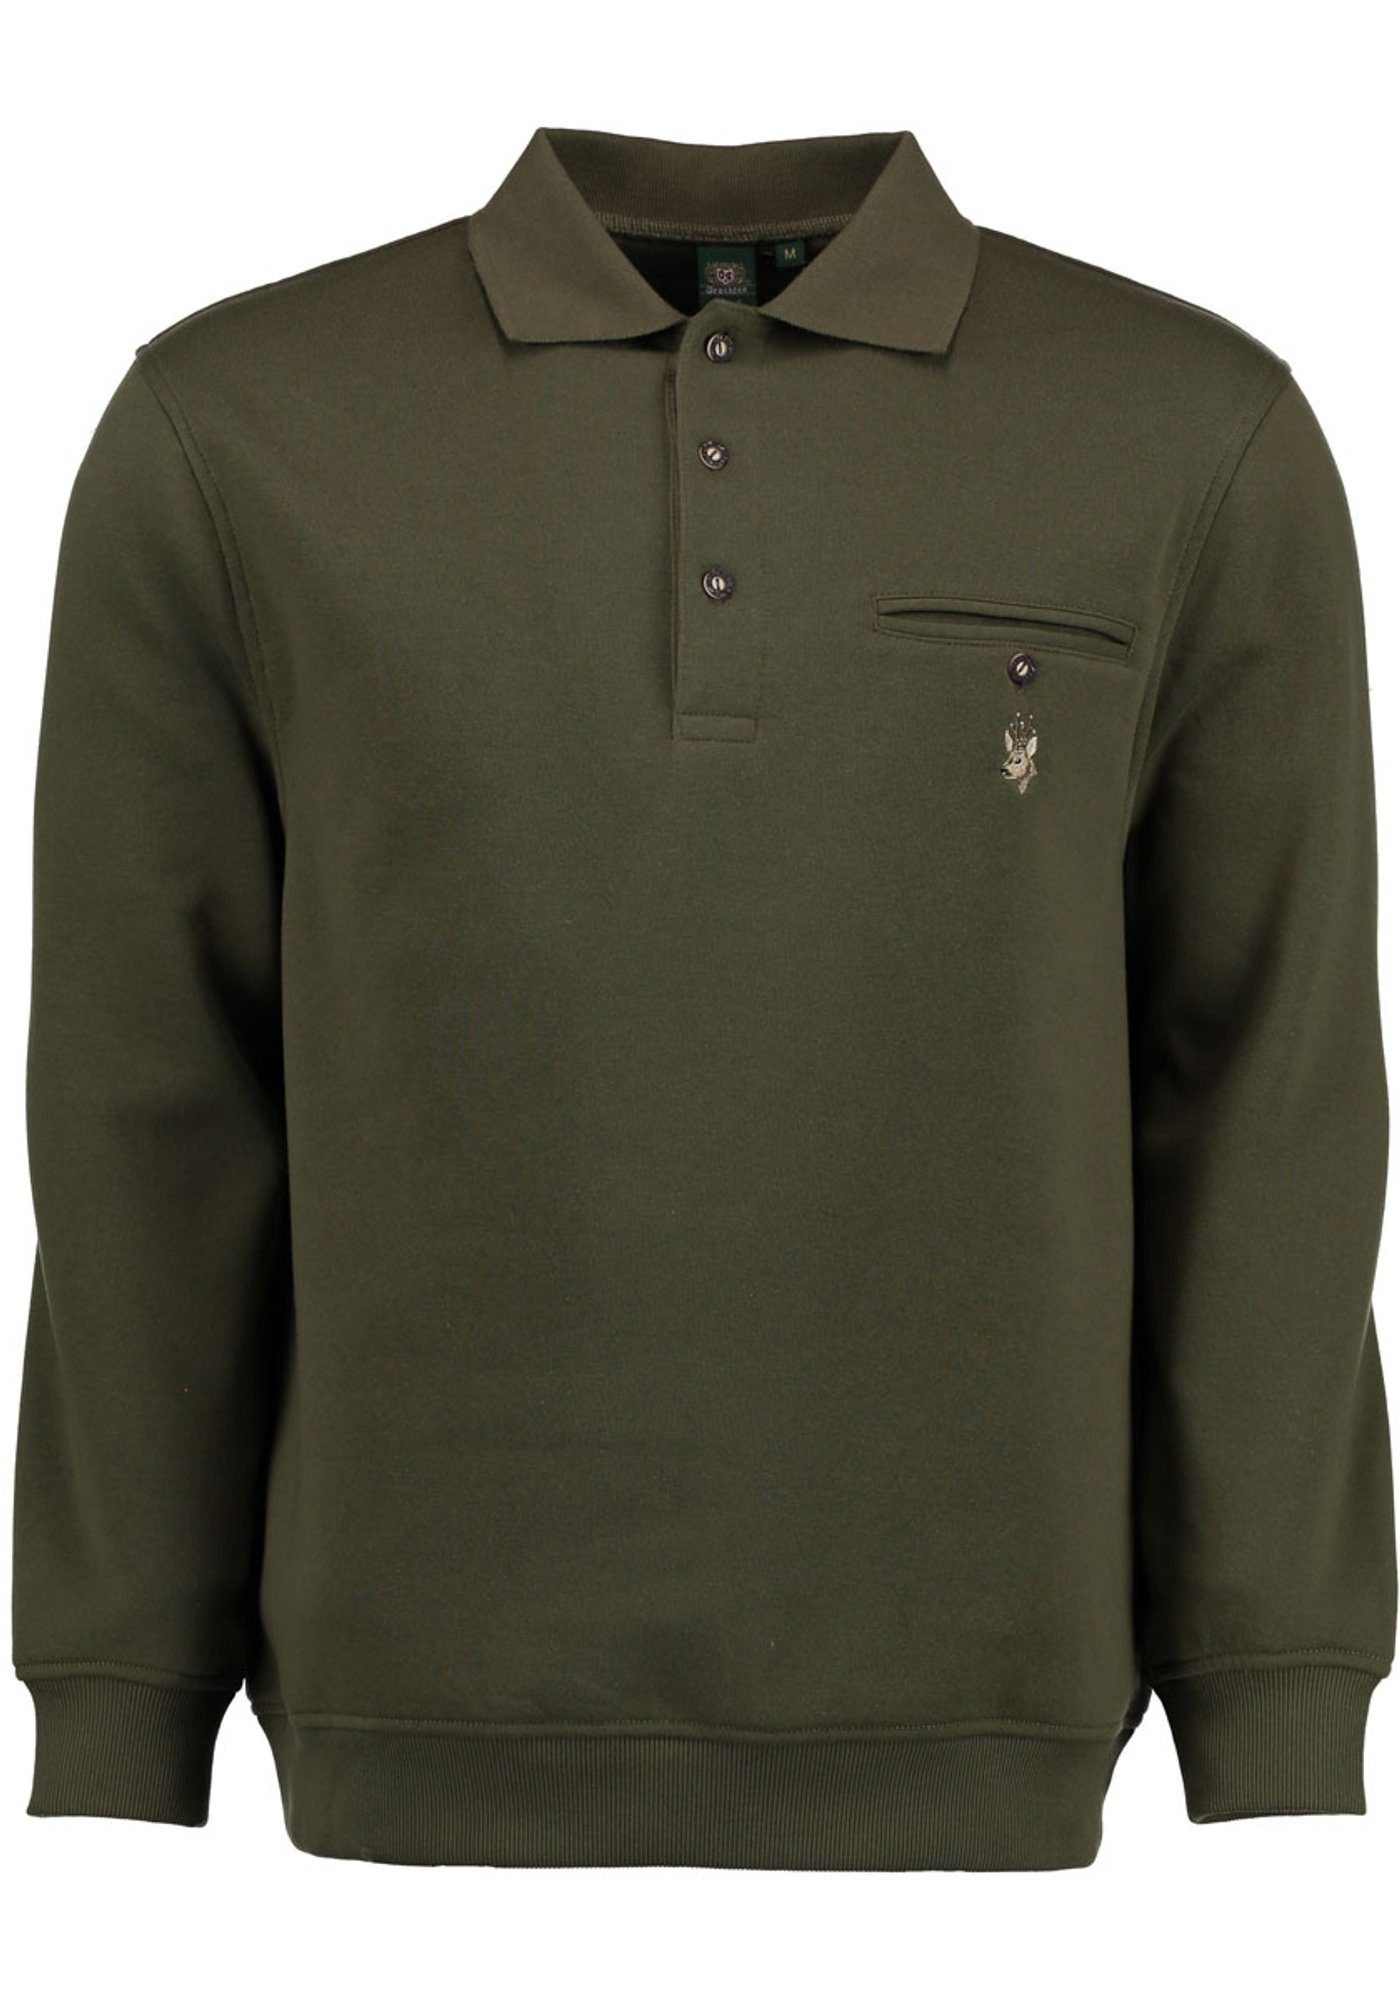 Sweatshirt Rehkopf-Stickerei OS-Trachten Kragen Rizapa Jagdsweatshirt mit Brusttasche auf und